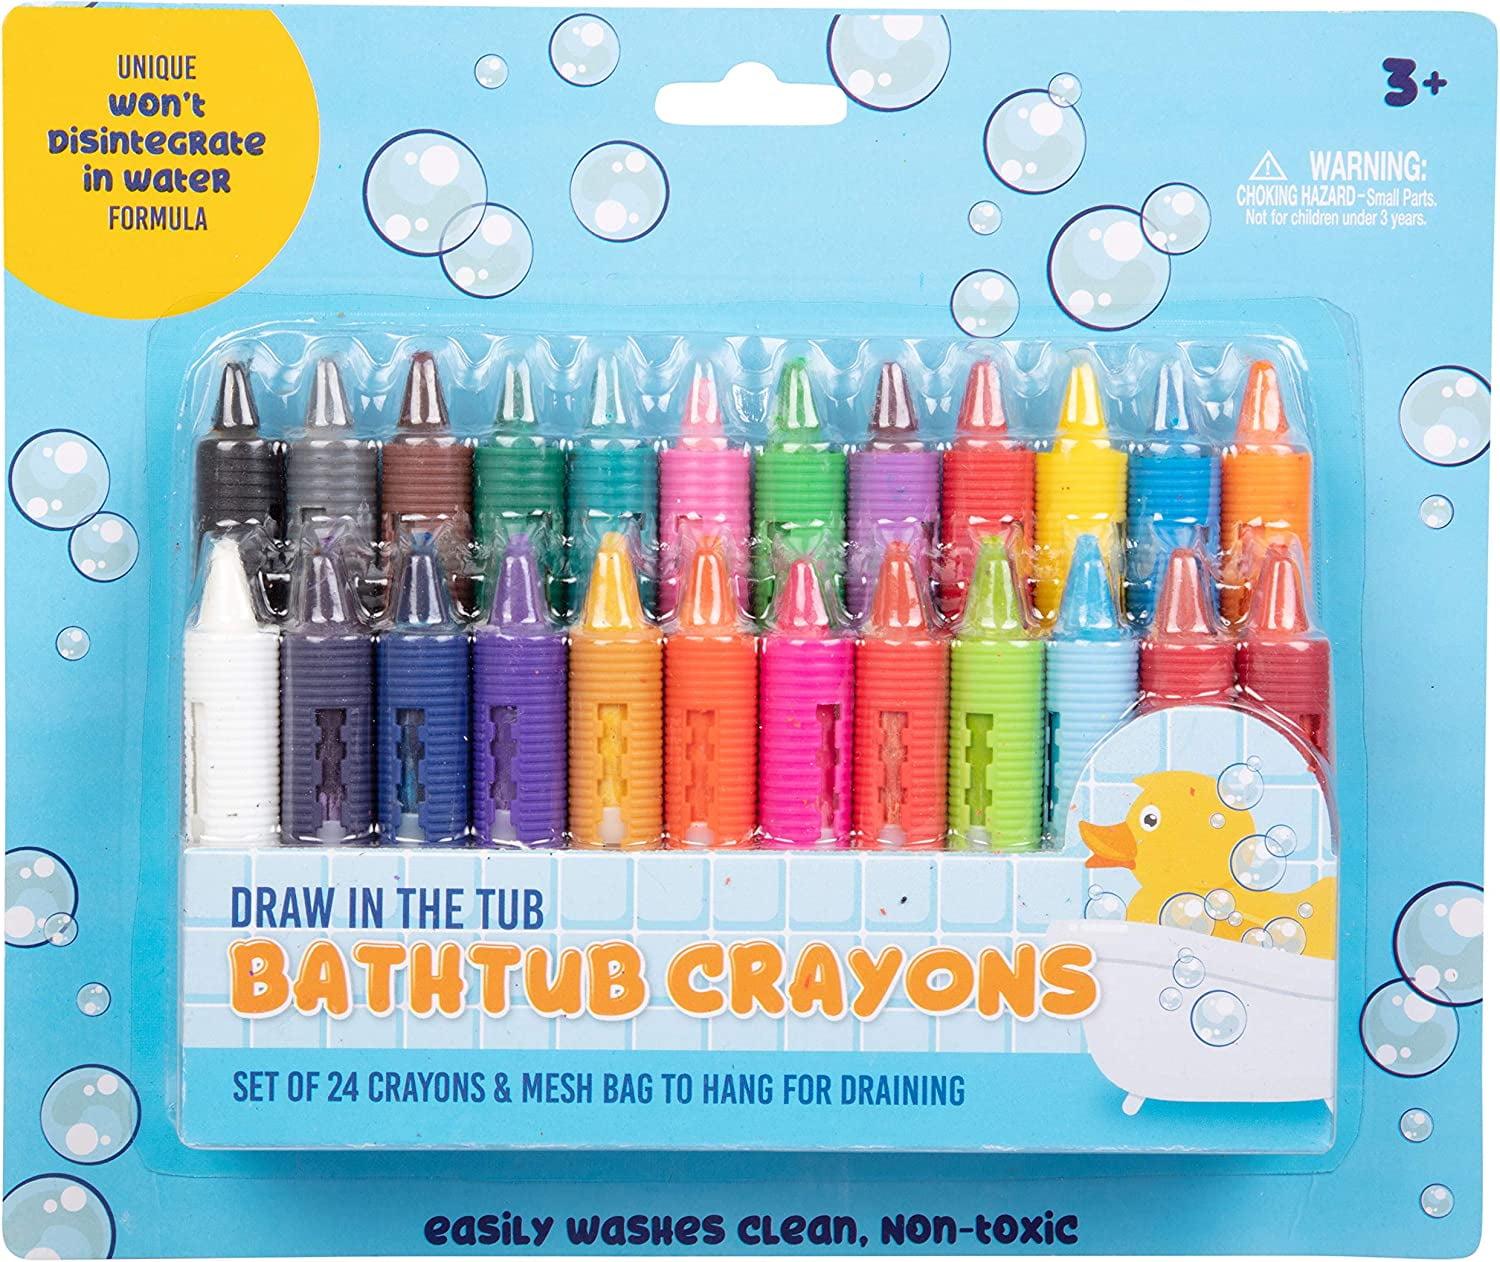 Bathtub Crayons